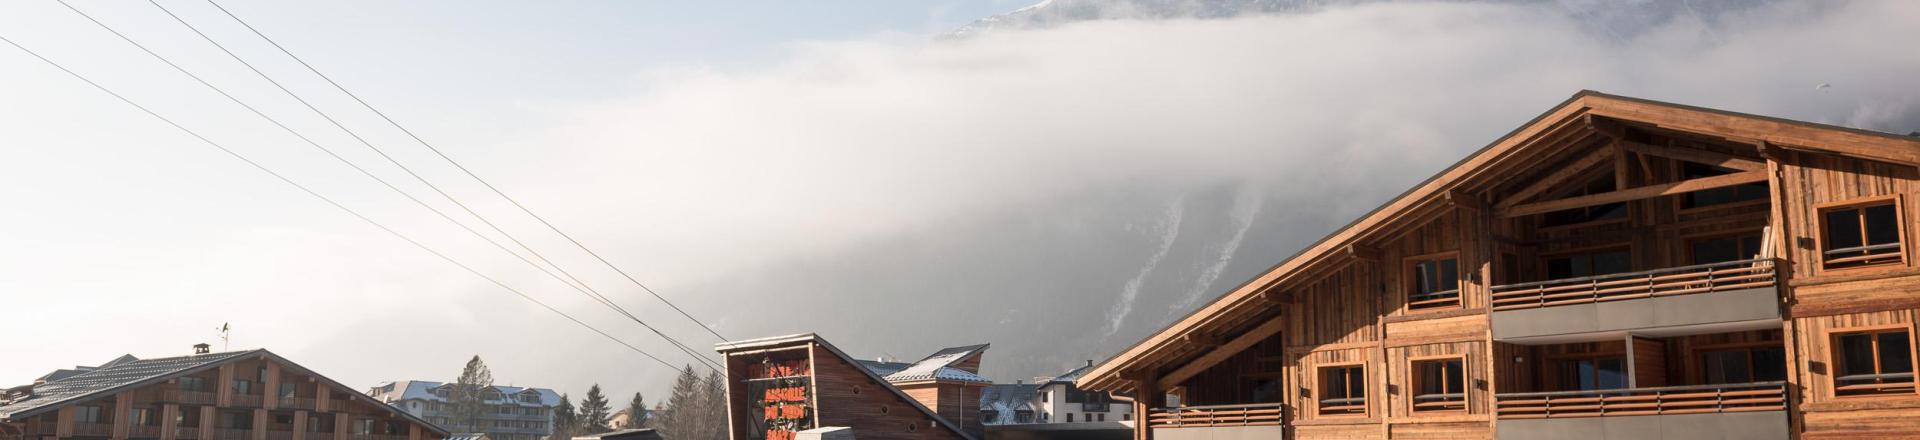 Аренда на лыжном курорте Résidence le Cristal de Jade - Chamonix - зимой под открытым небом